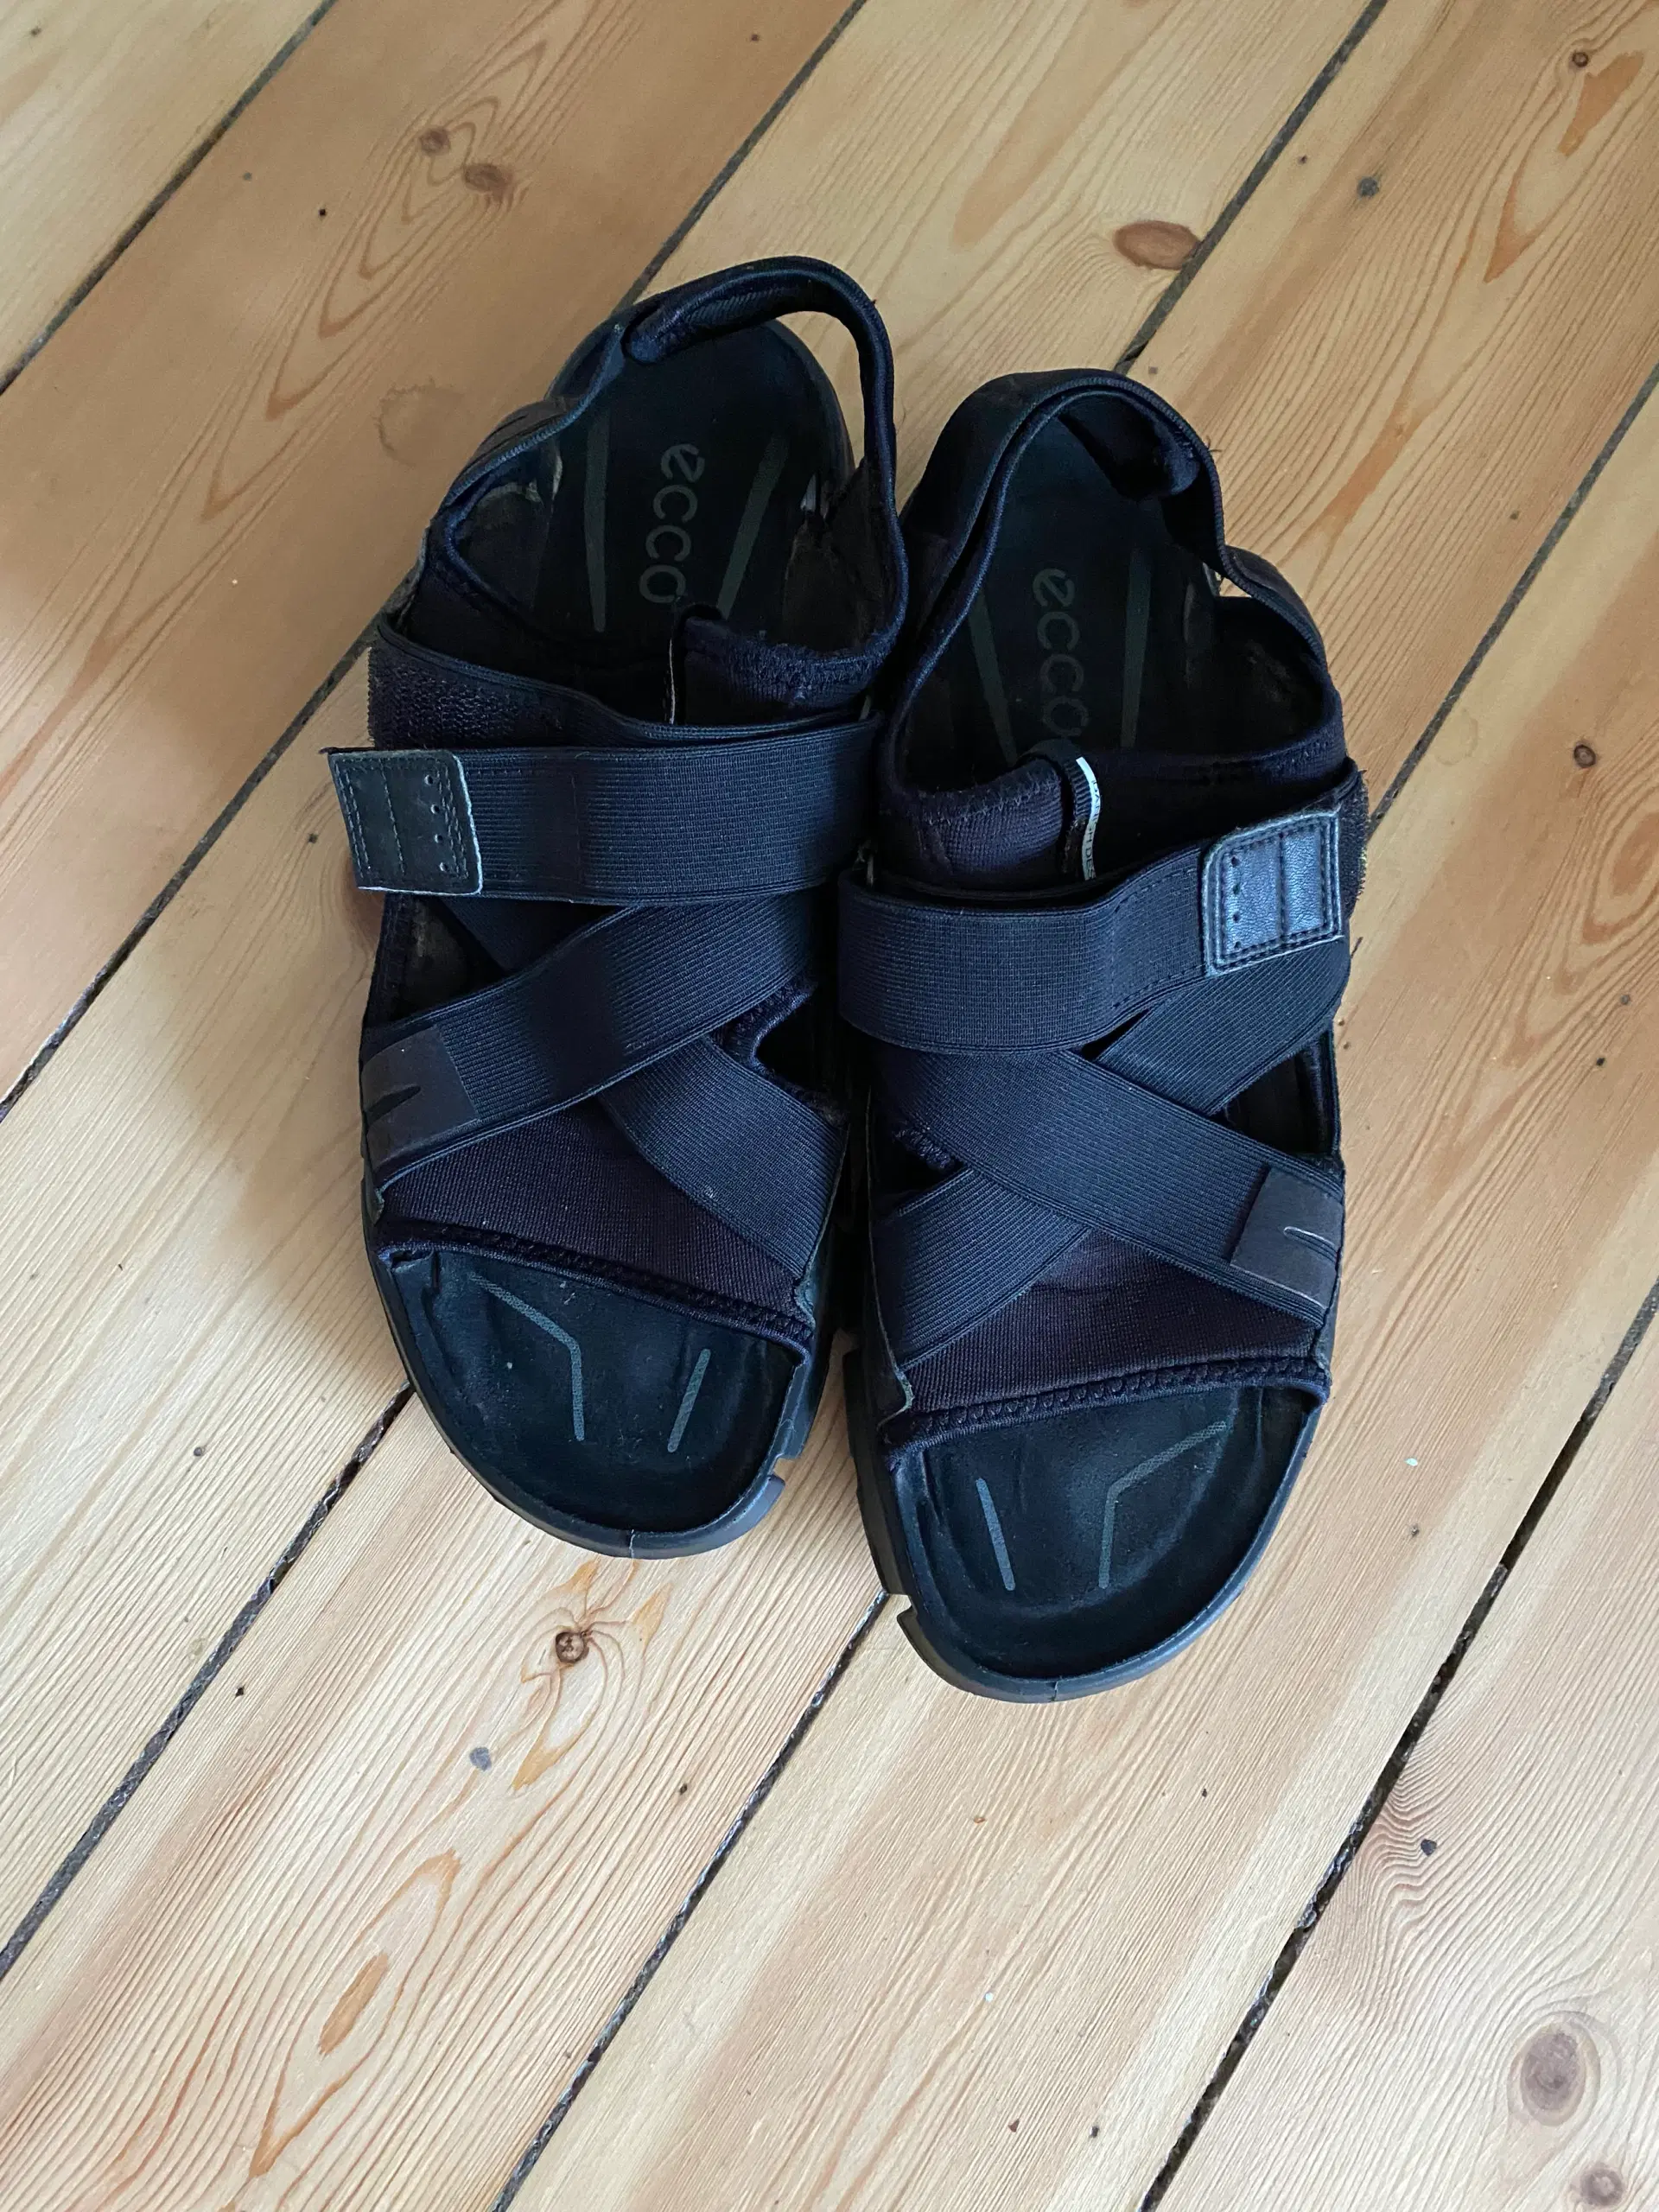 Dame sandaler str 42 sort Søborg - GulogGratis.dk